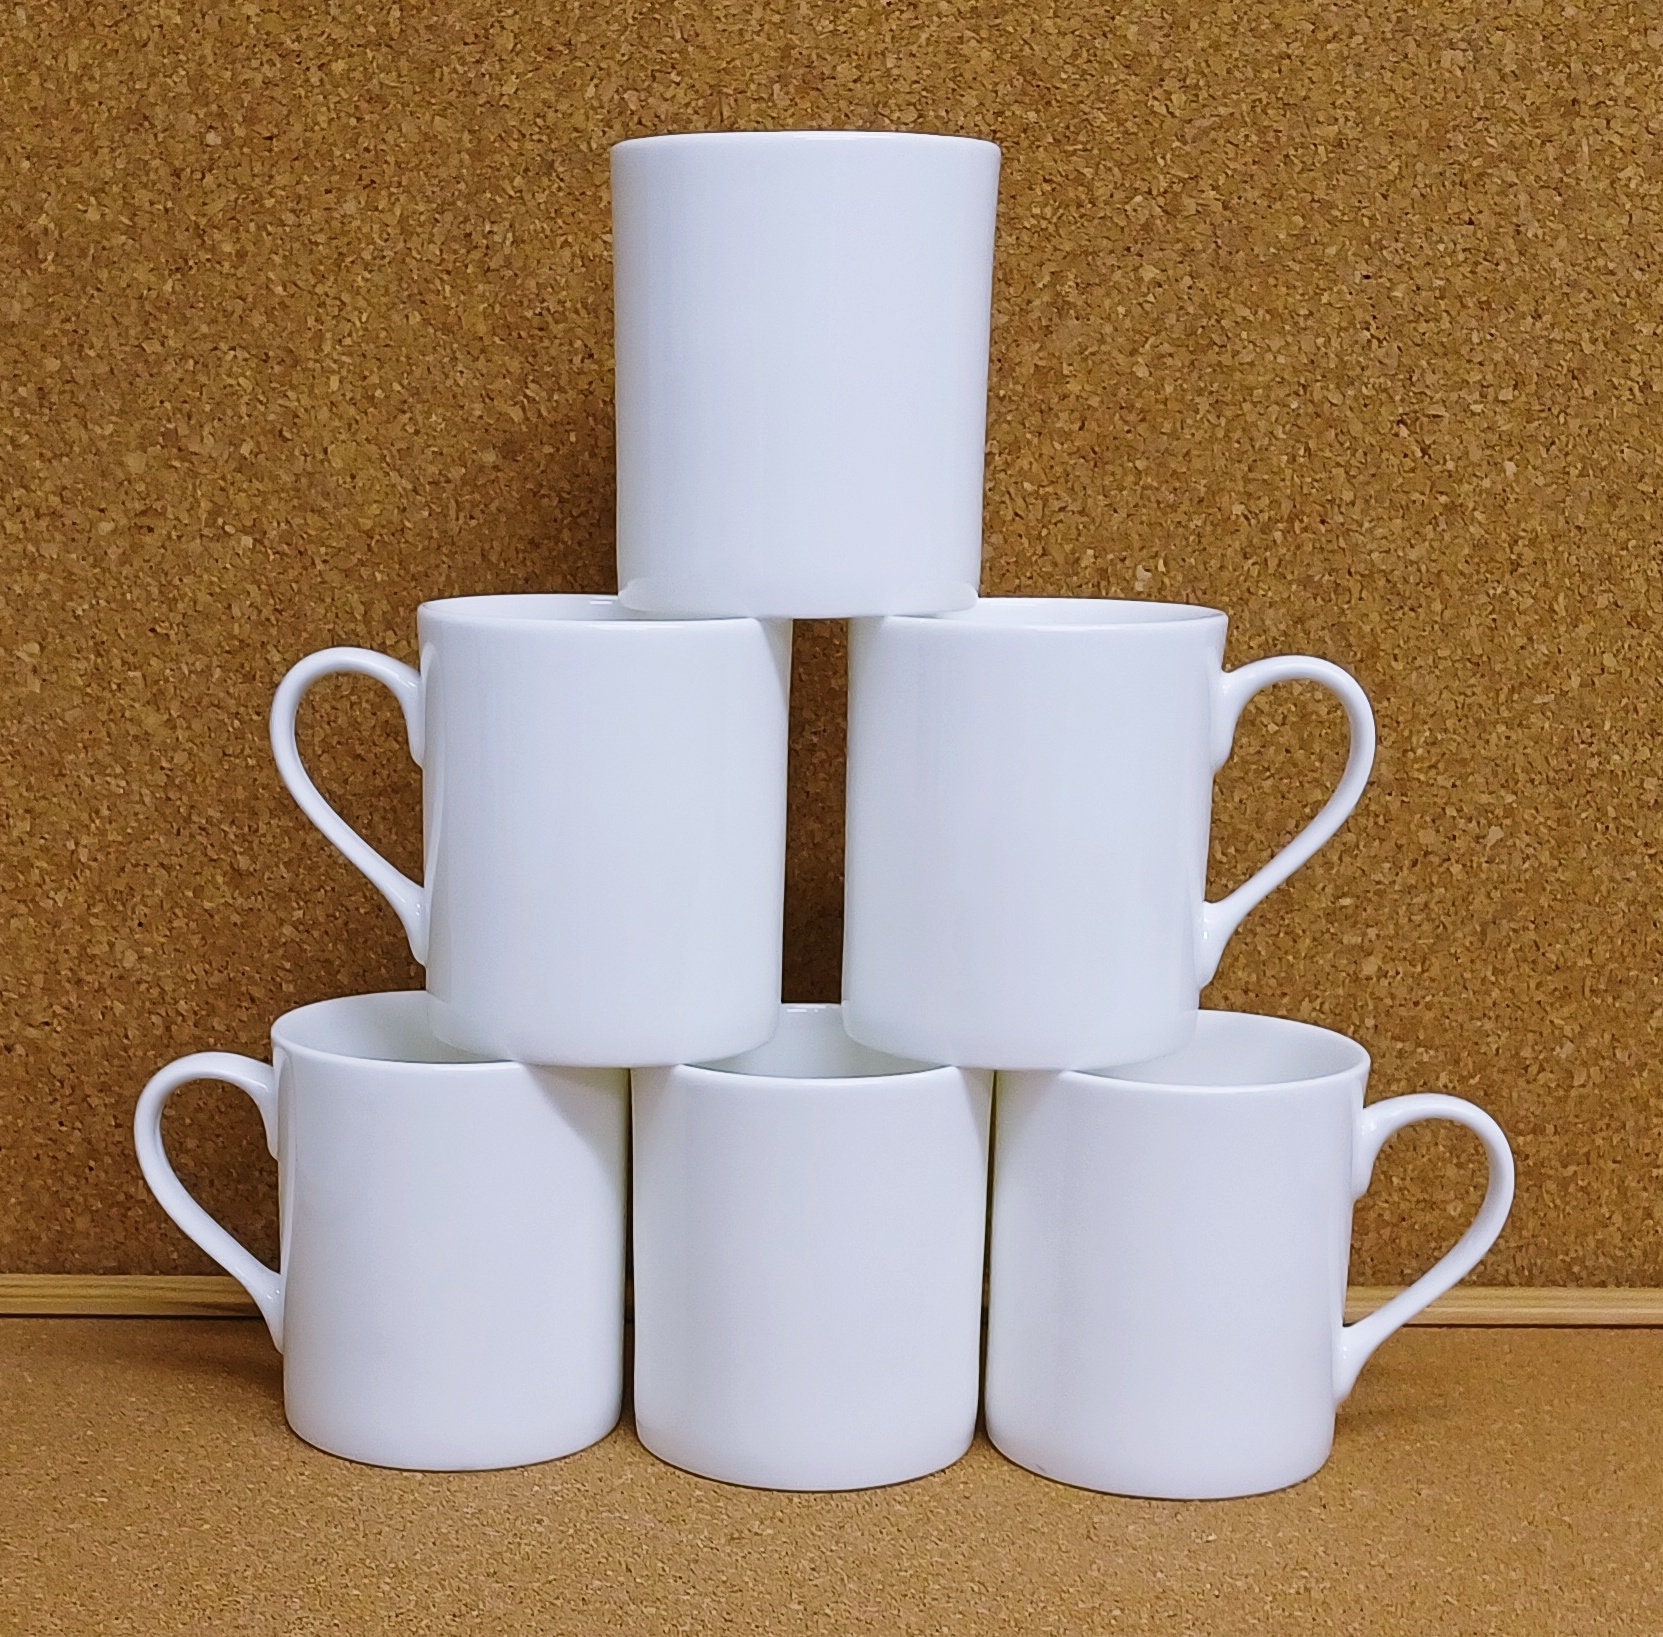 BLUE RIBBON White Sublimation Plain Blank Coffee Mug Hot Chocolate Mugs,  Ceramic Mugs Hot Cocoa Mugs Mug Sets Pack of 2 15 oz